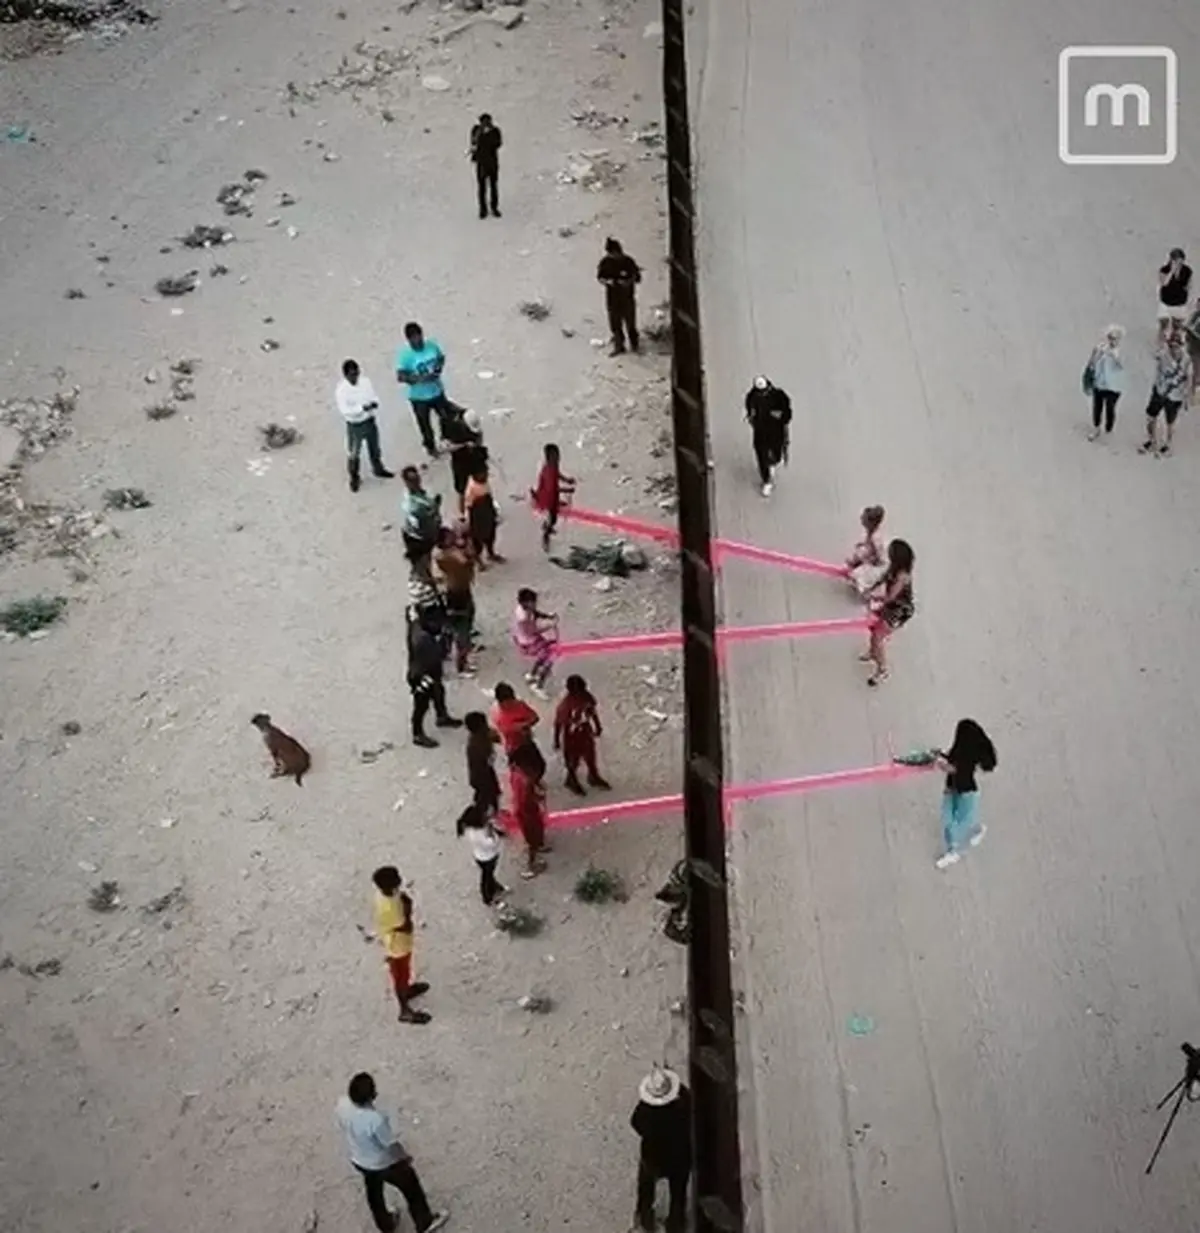 الاکلنگ بازی کودکان بین مرز آمریکا و مکزیک| نصب الاکلنگ های صورتی میان مرز آمریکا و مکزیک  